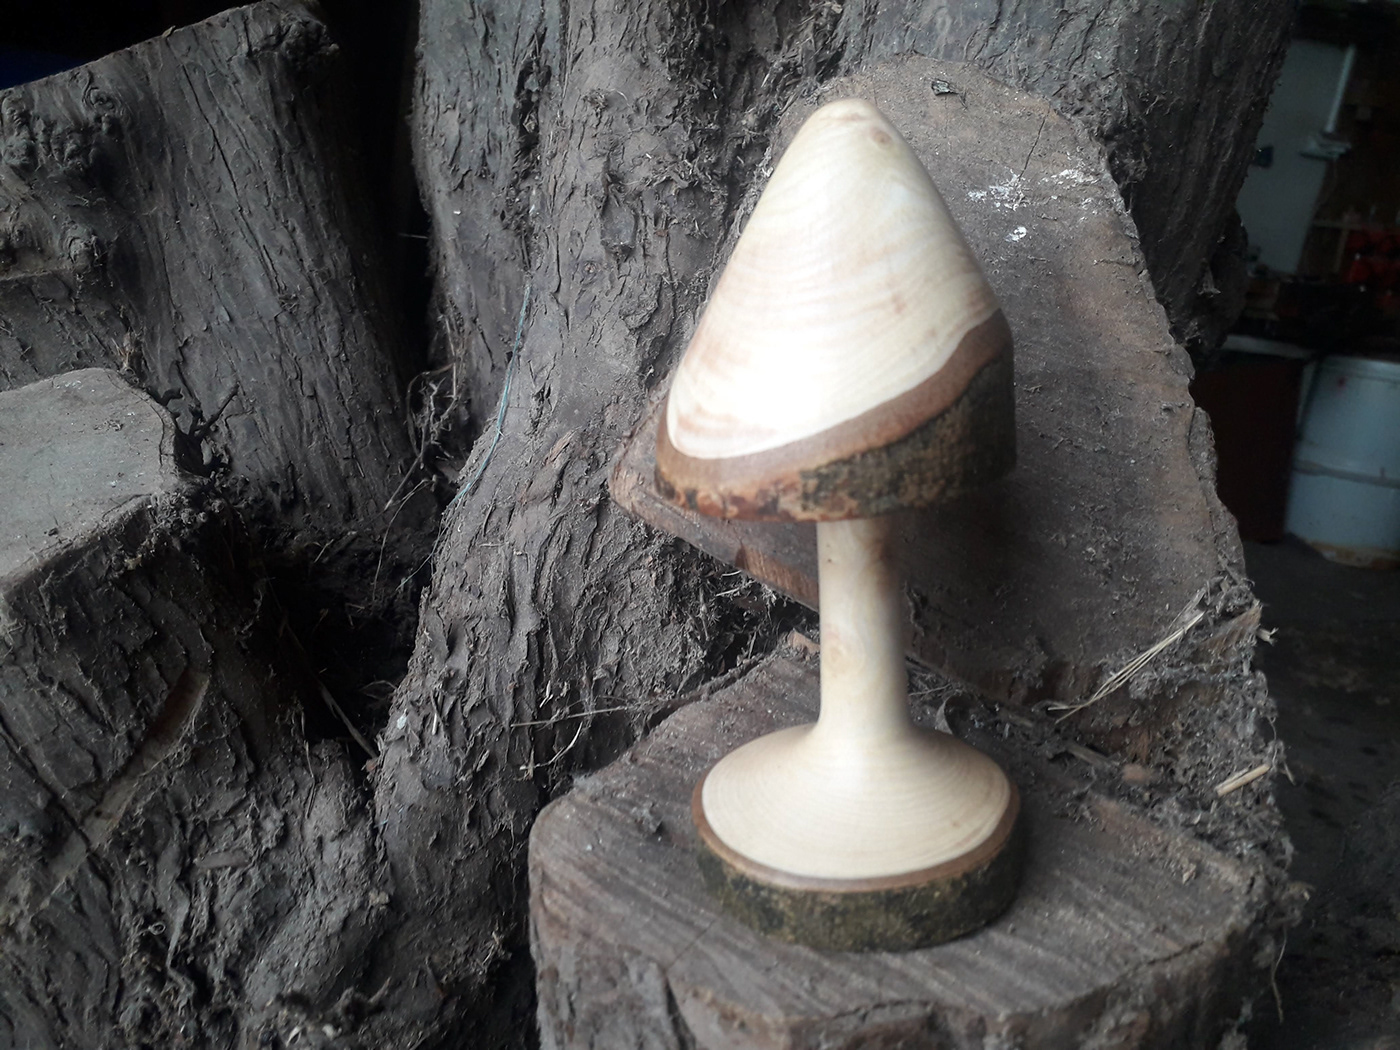 art ash crafts   Donegal Ireland lathe mushroom patrick sweeney design wood woodturning